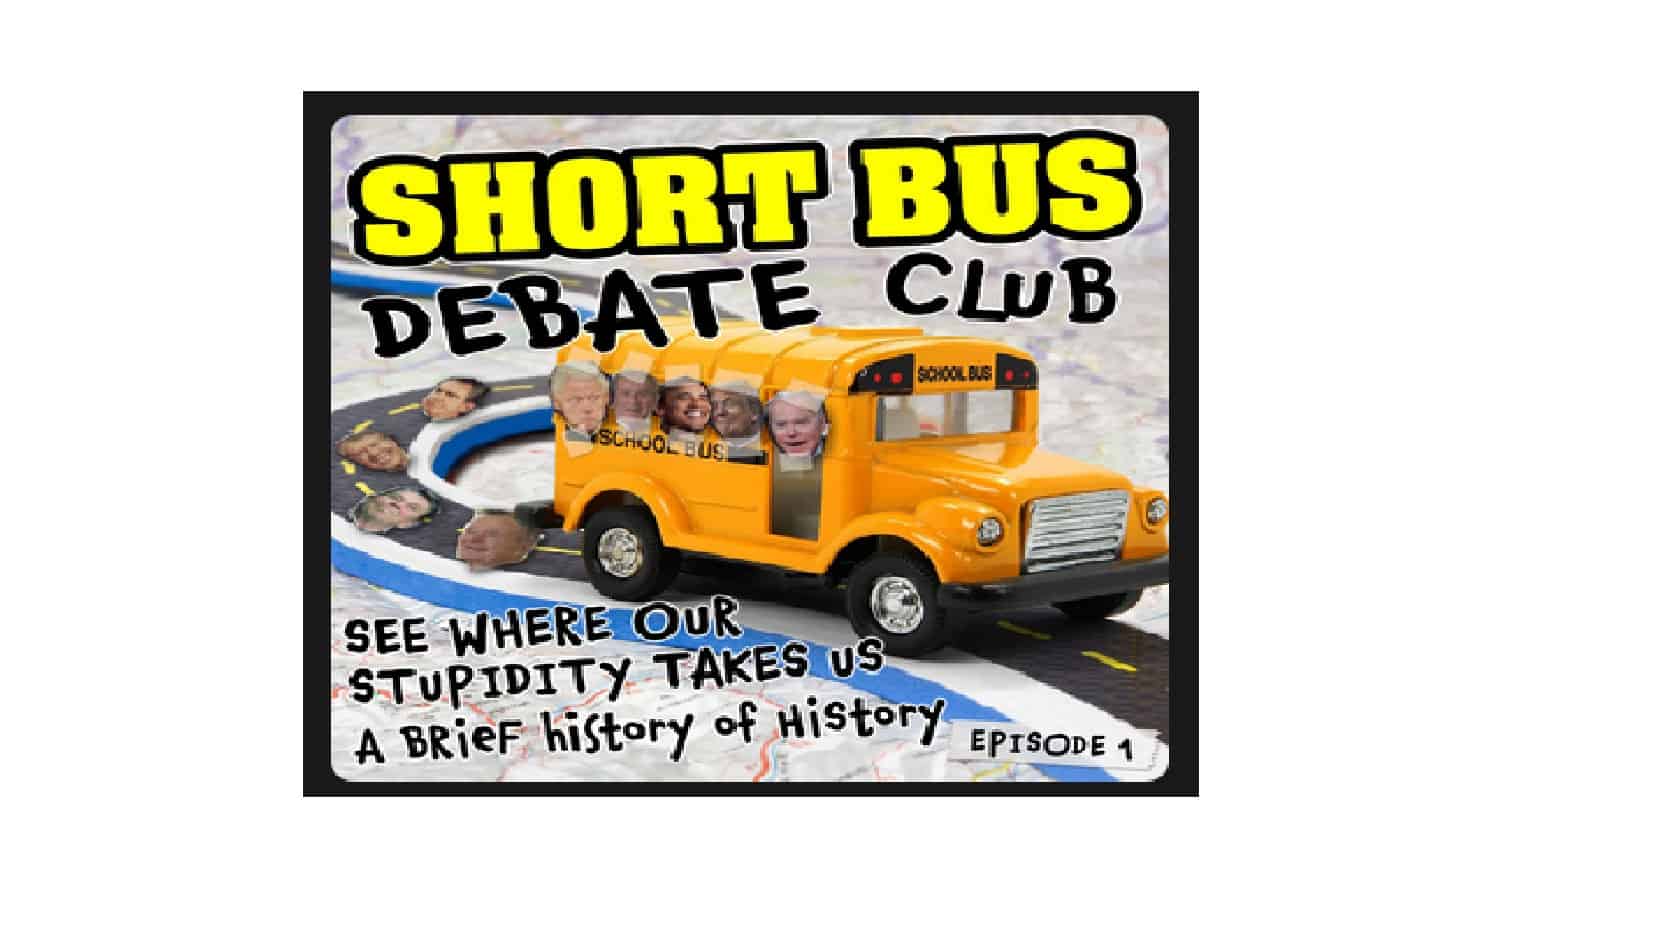 short bus debate club